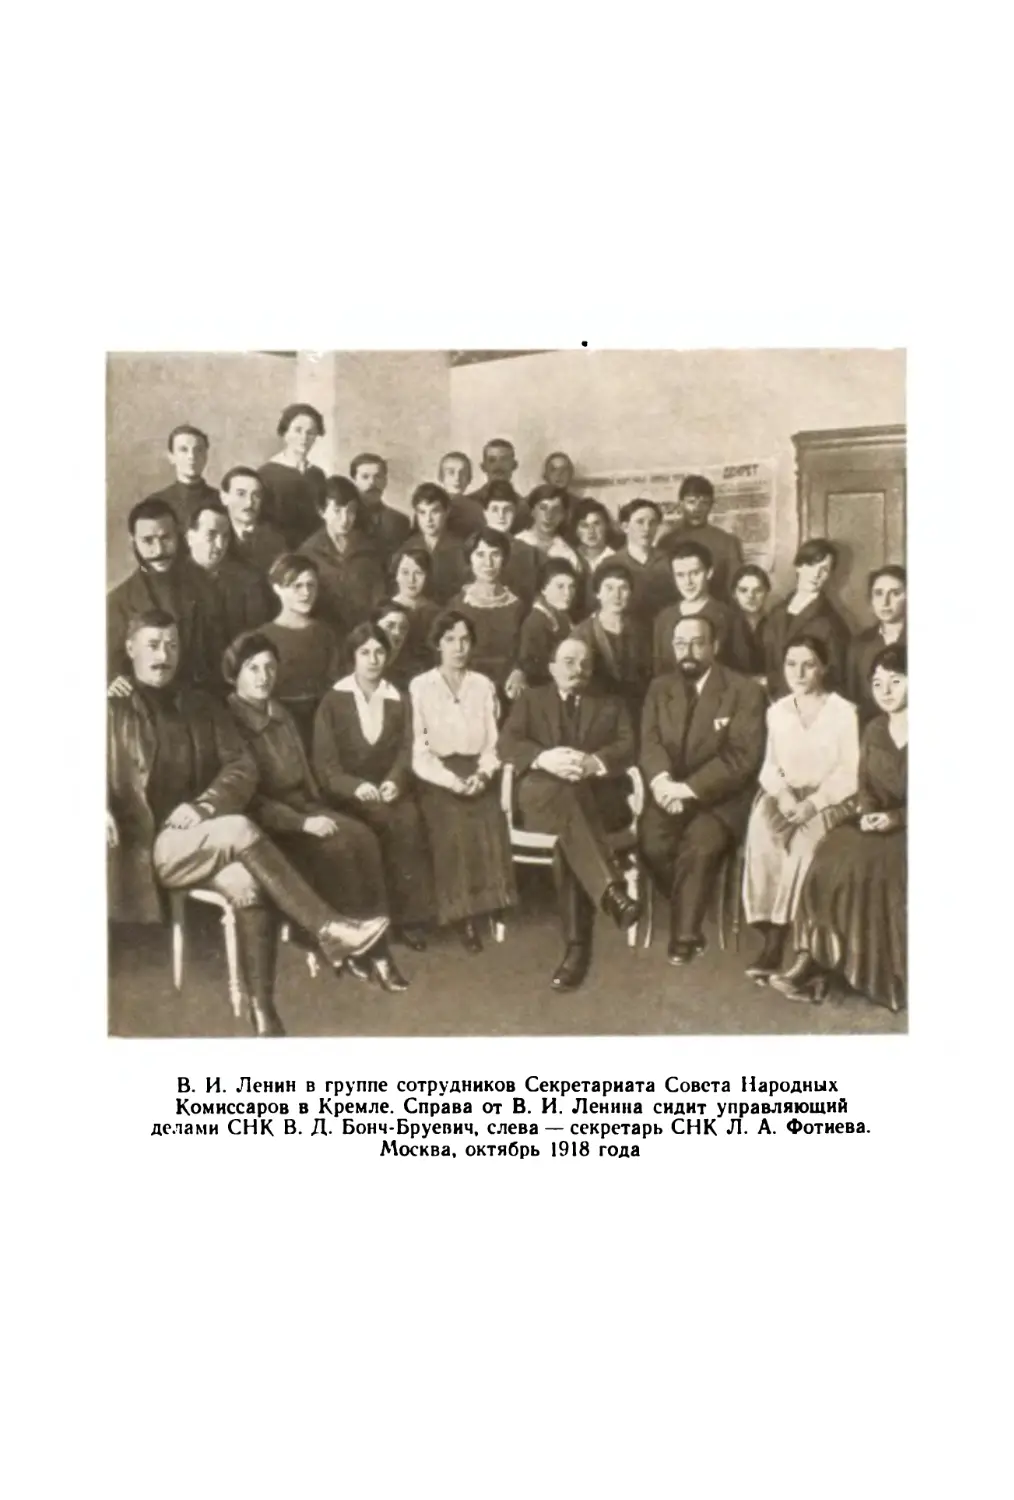 Фото: В. И. Ленин в группе сотрудников Секретариата СНК. Москва, октябрь 1918 года